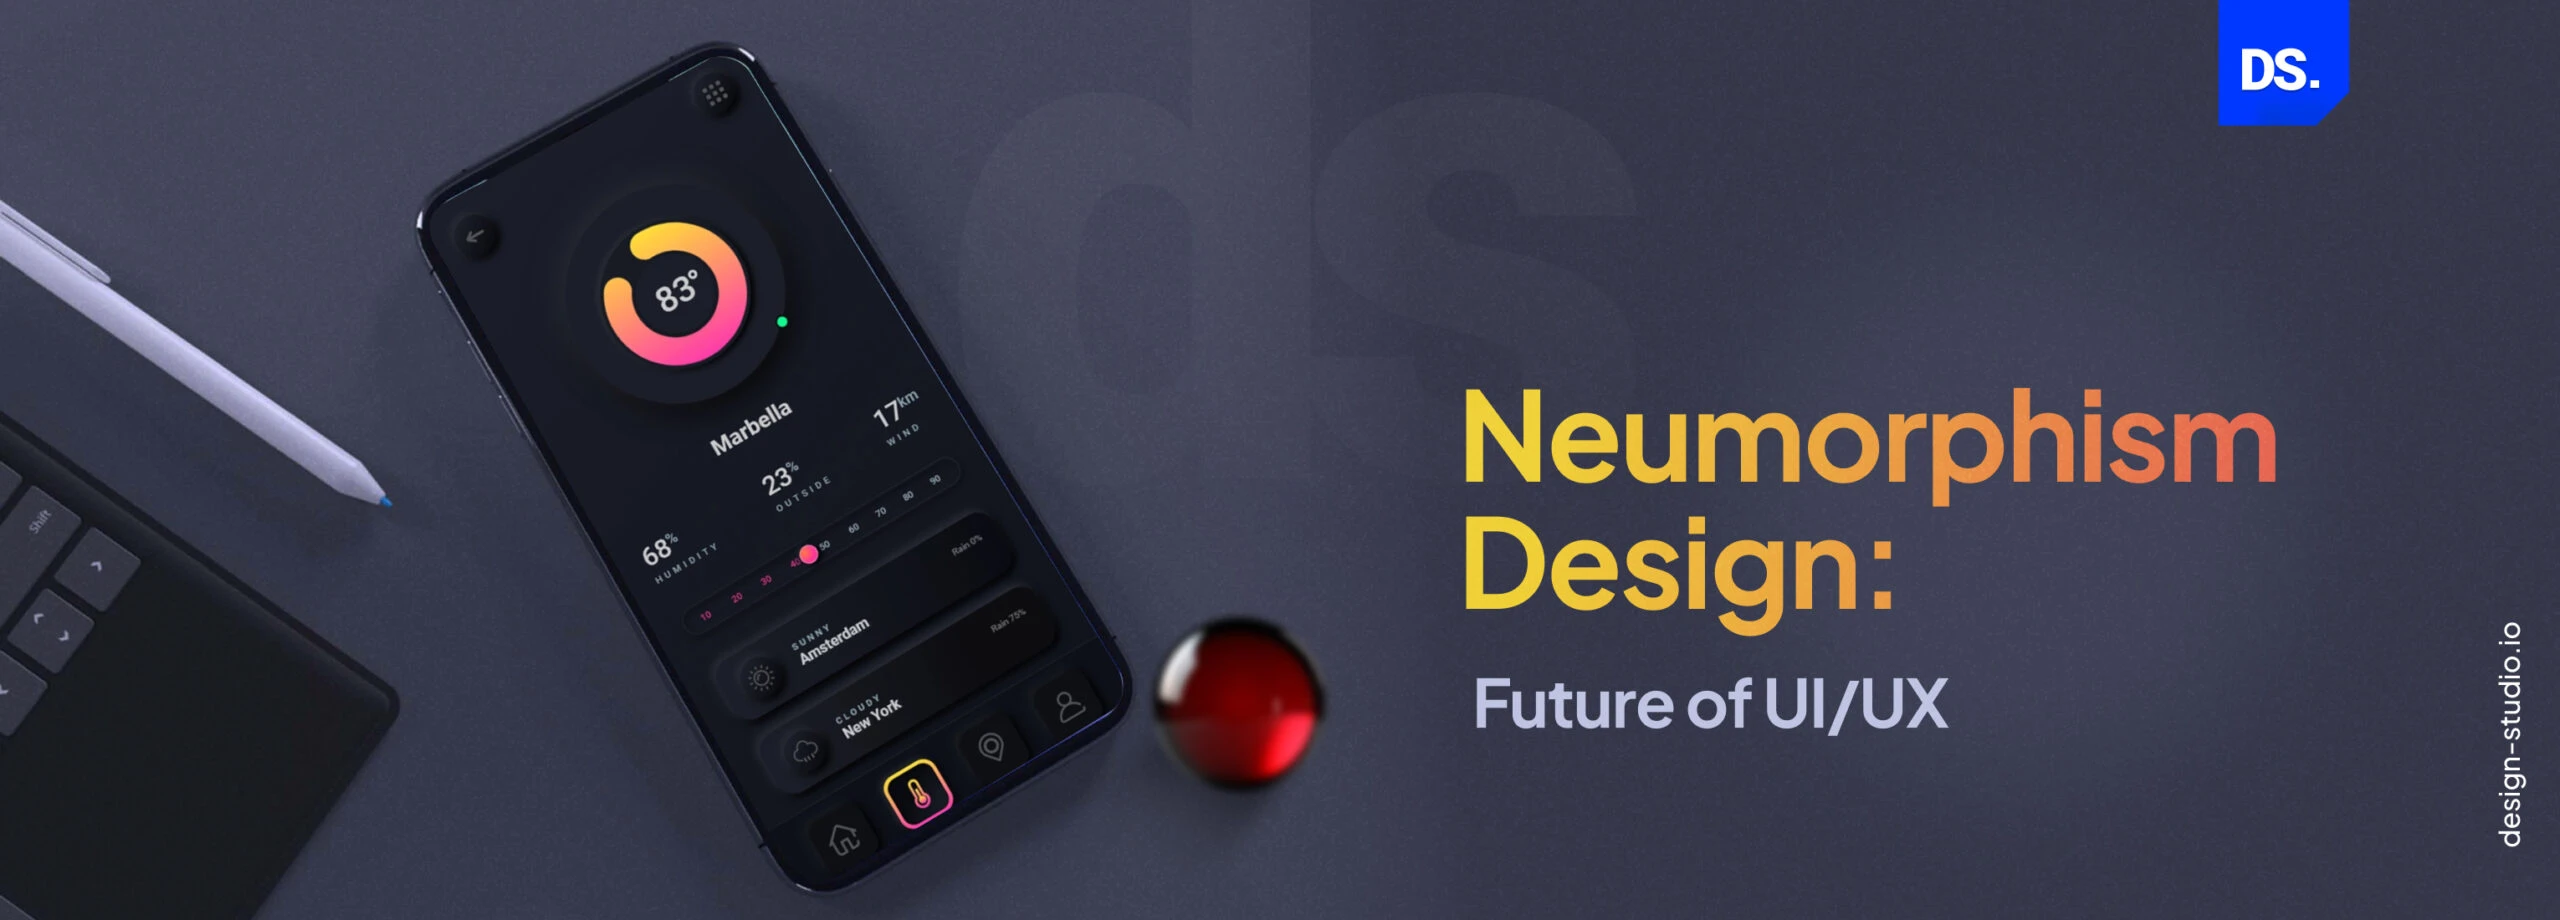 Neumorphism is the Future of UI/UX Design